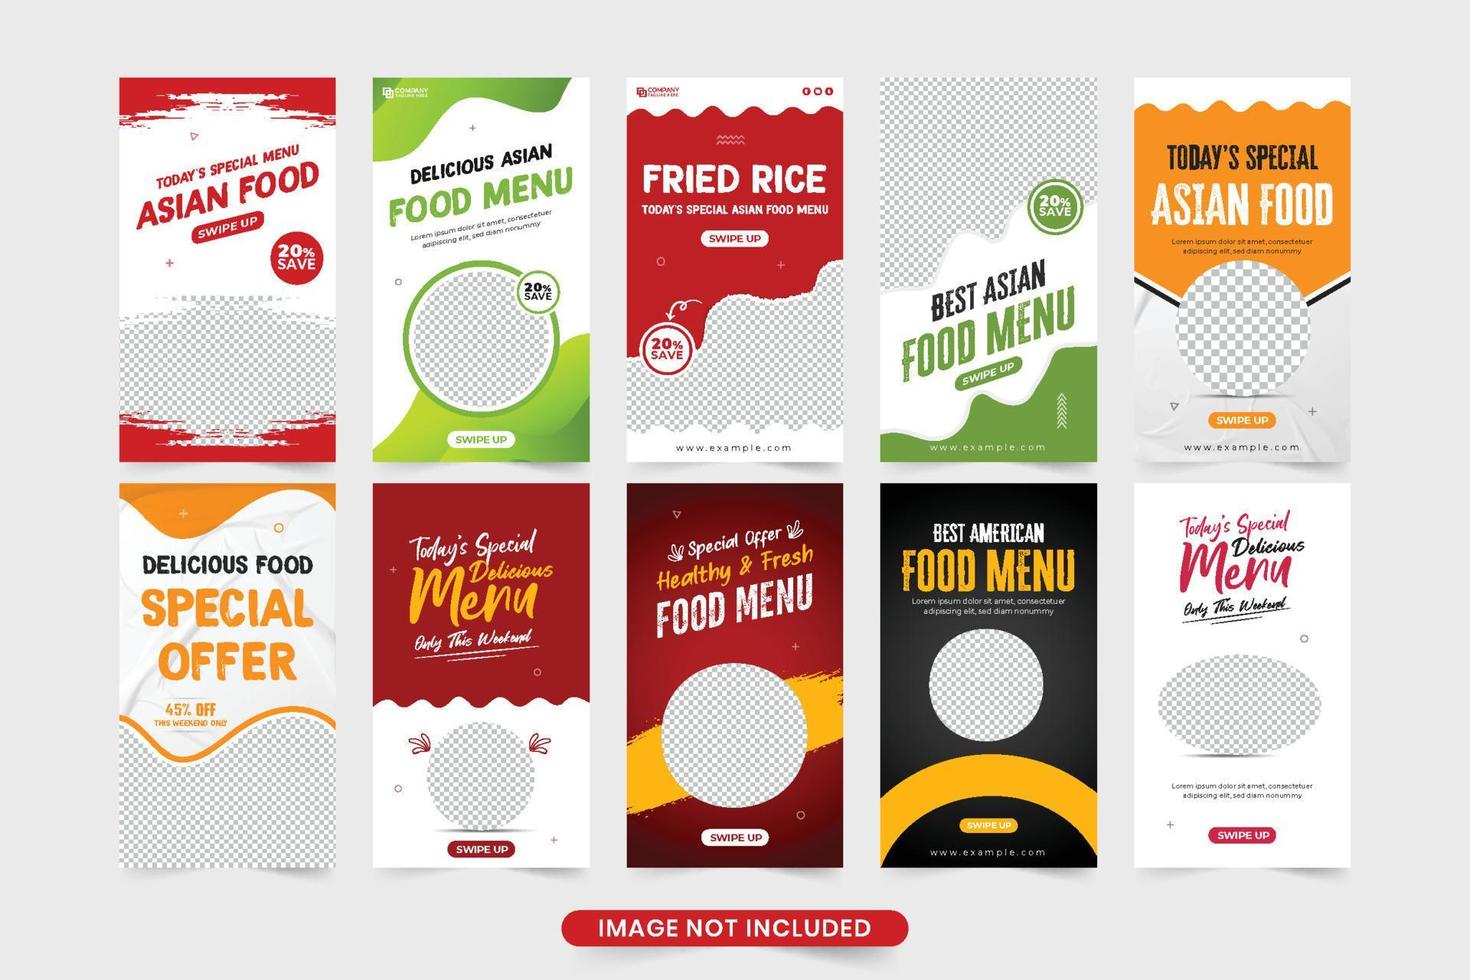 köstliche speisekarte social media story template sammlung mit roten und grünen farben. Web-Banner-Set-Design für spezielle Lebensmittel mit abstrakten Formen. Restaurant-Werbevorlagenpaket. vektor